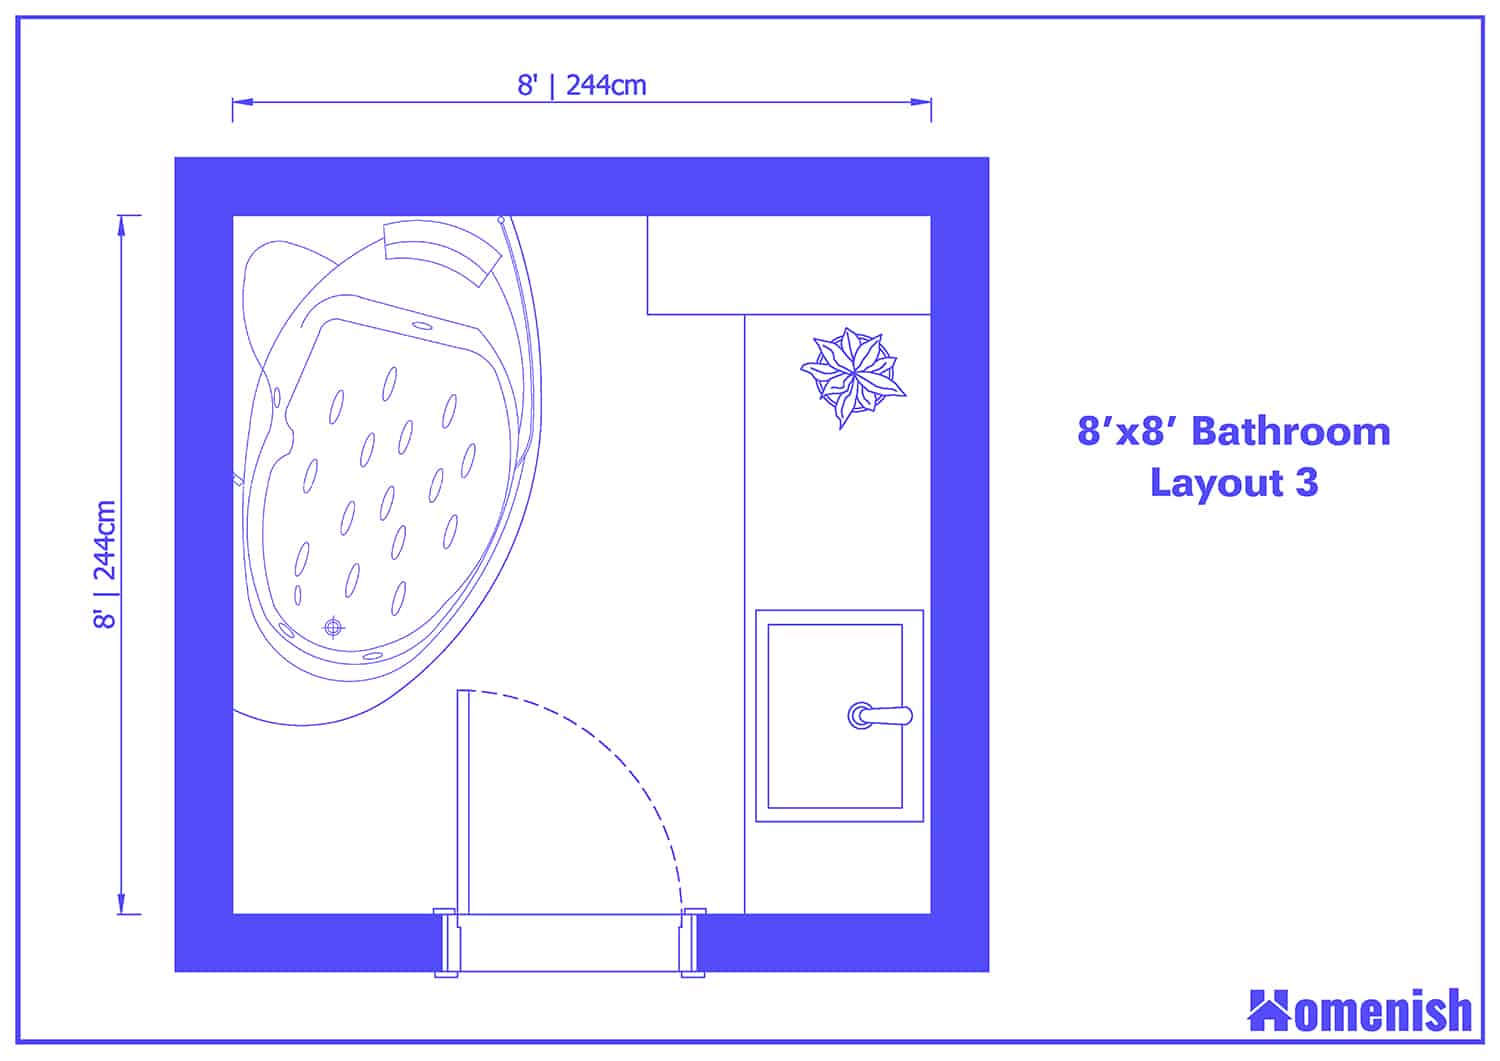 8' x 8' Bathroom Layout 3